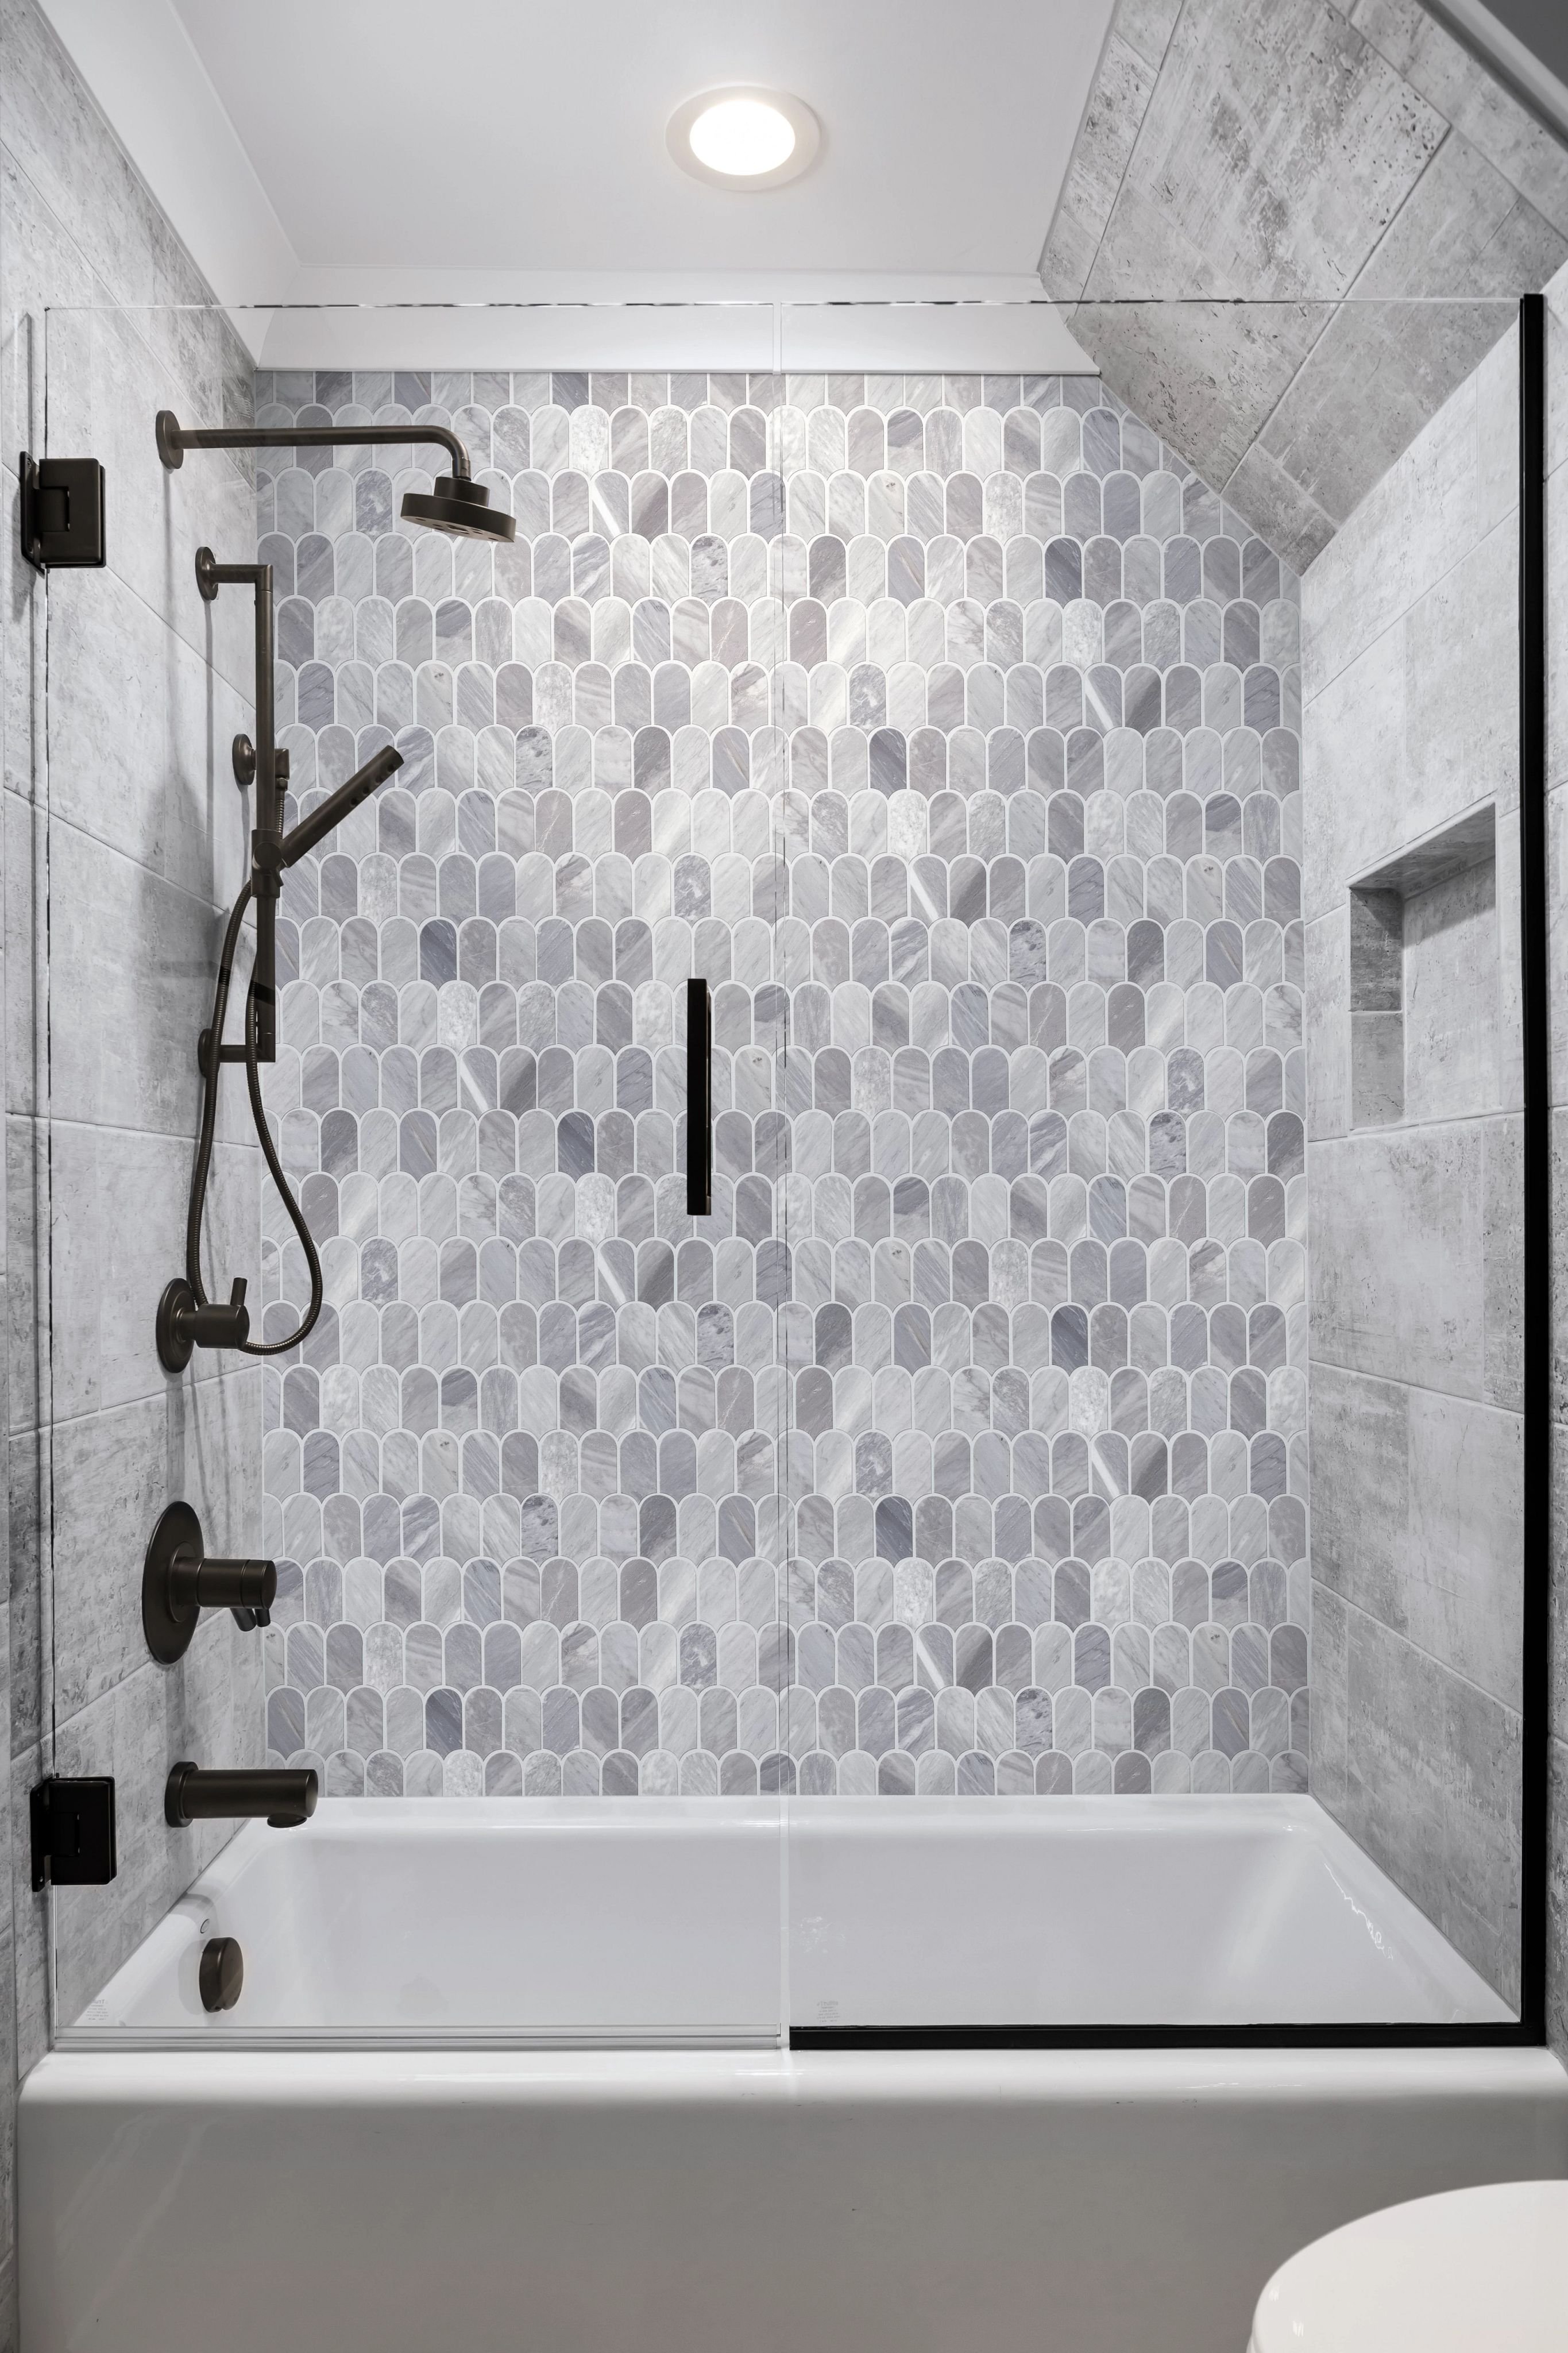 Shower Tile Installation by Uptight Flooring